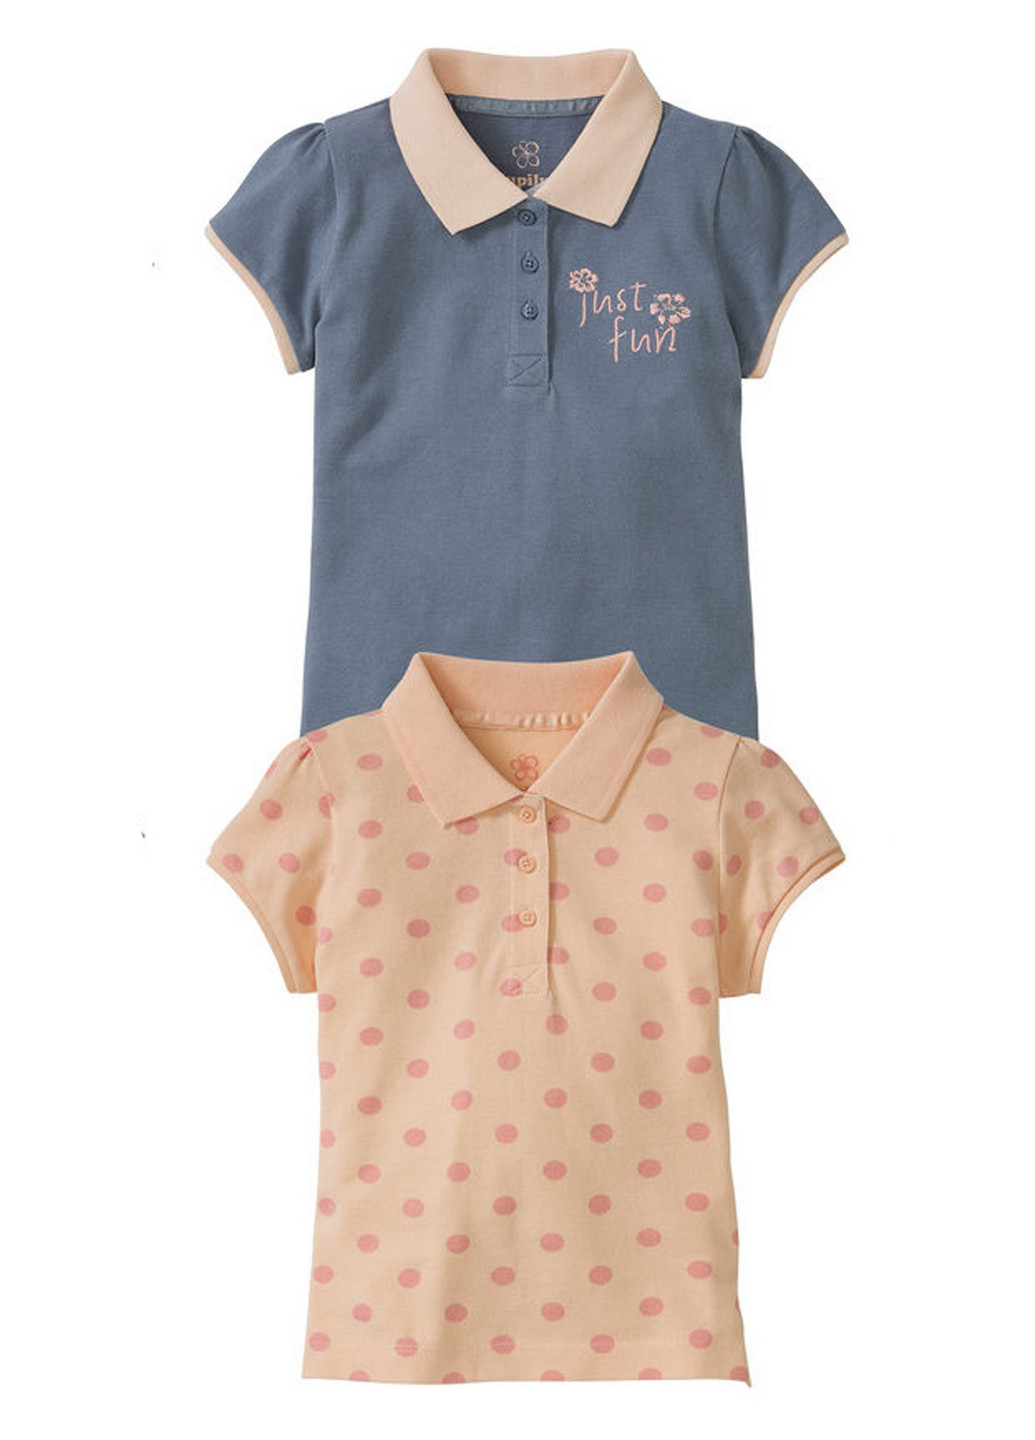 Цветная детская футболка-поло (2 шт.) для девочки Lupilu в горошек